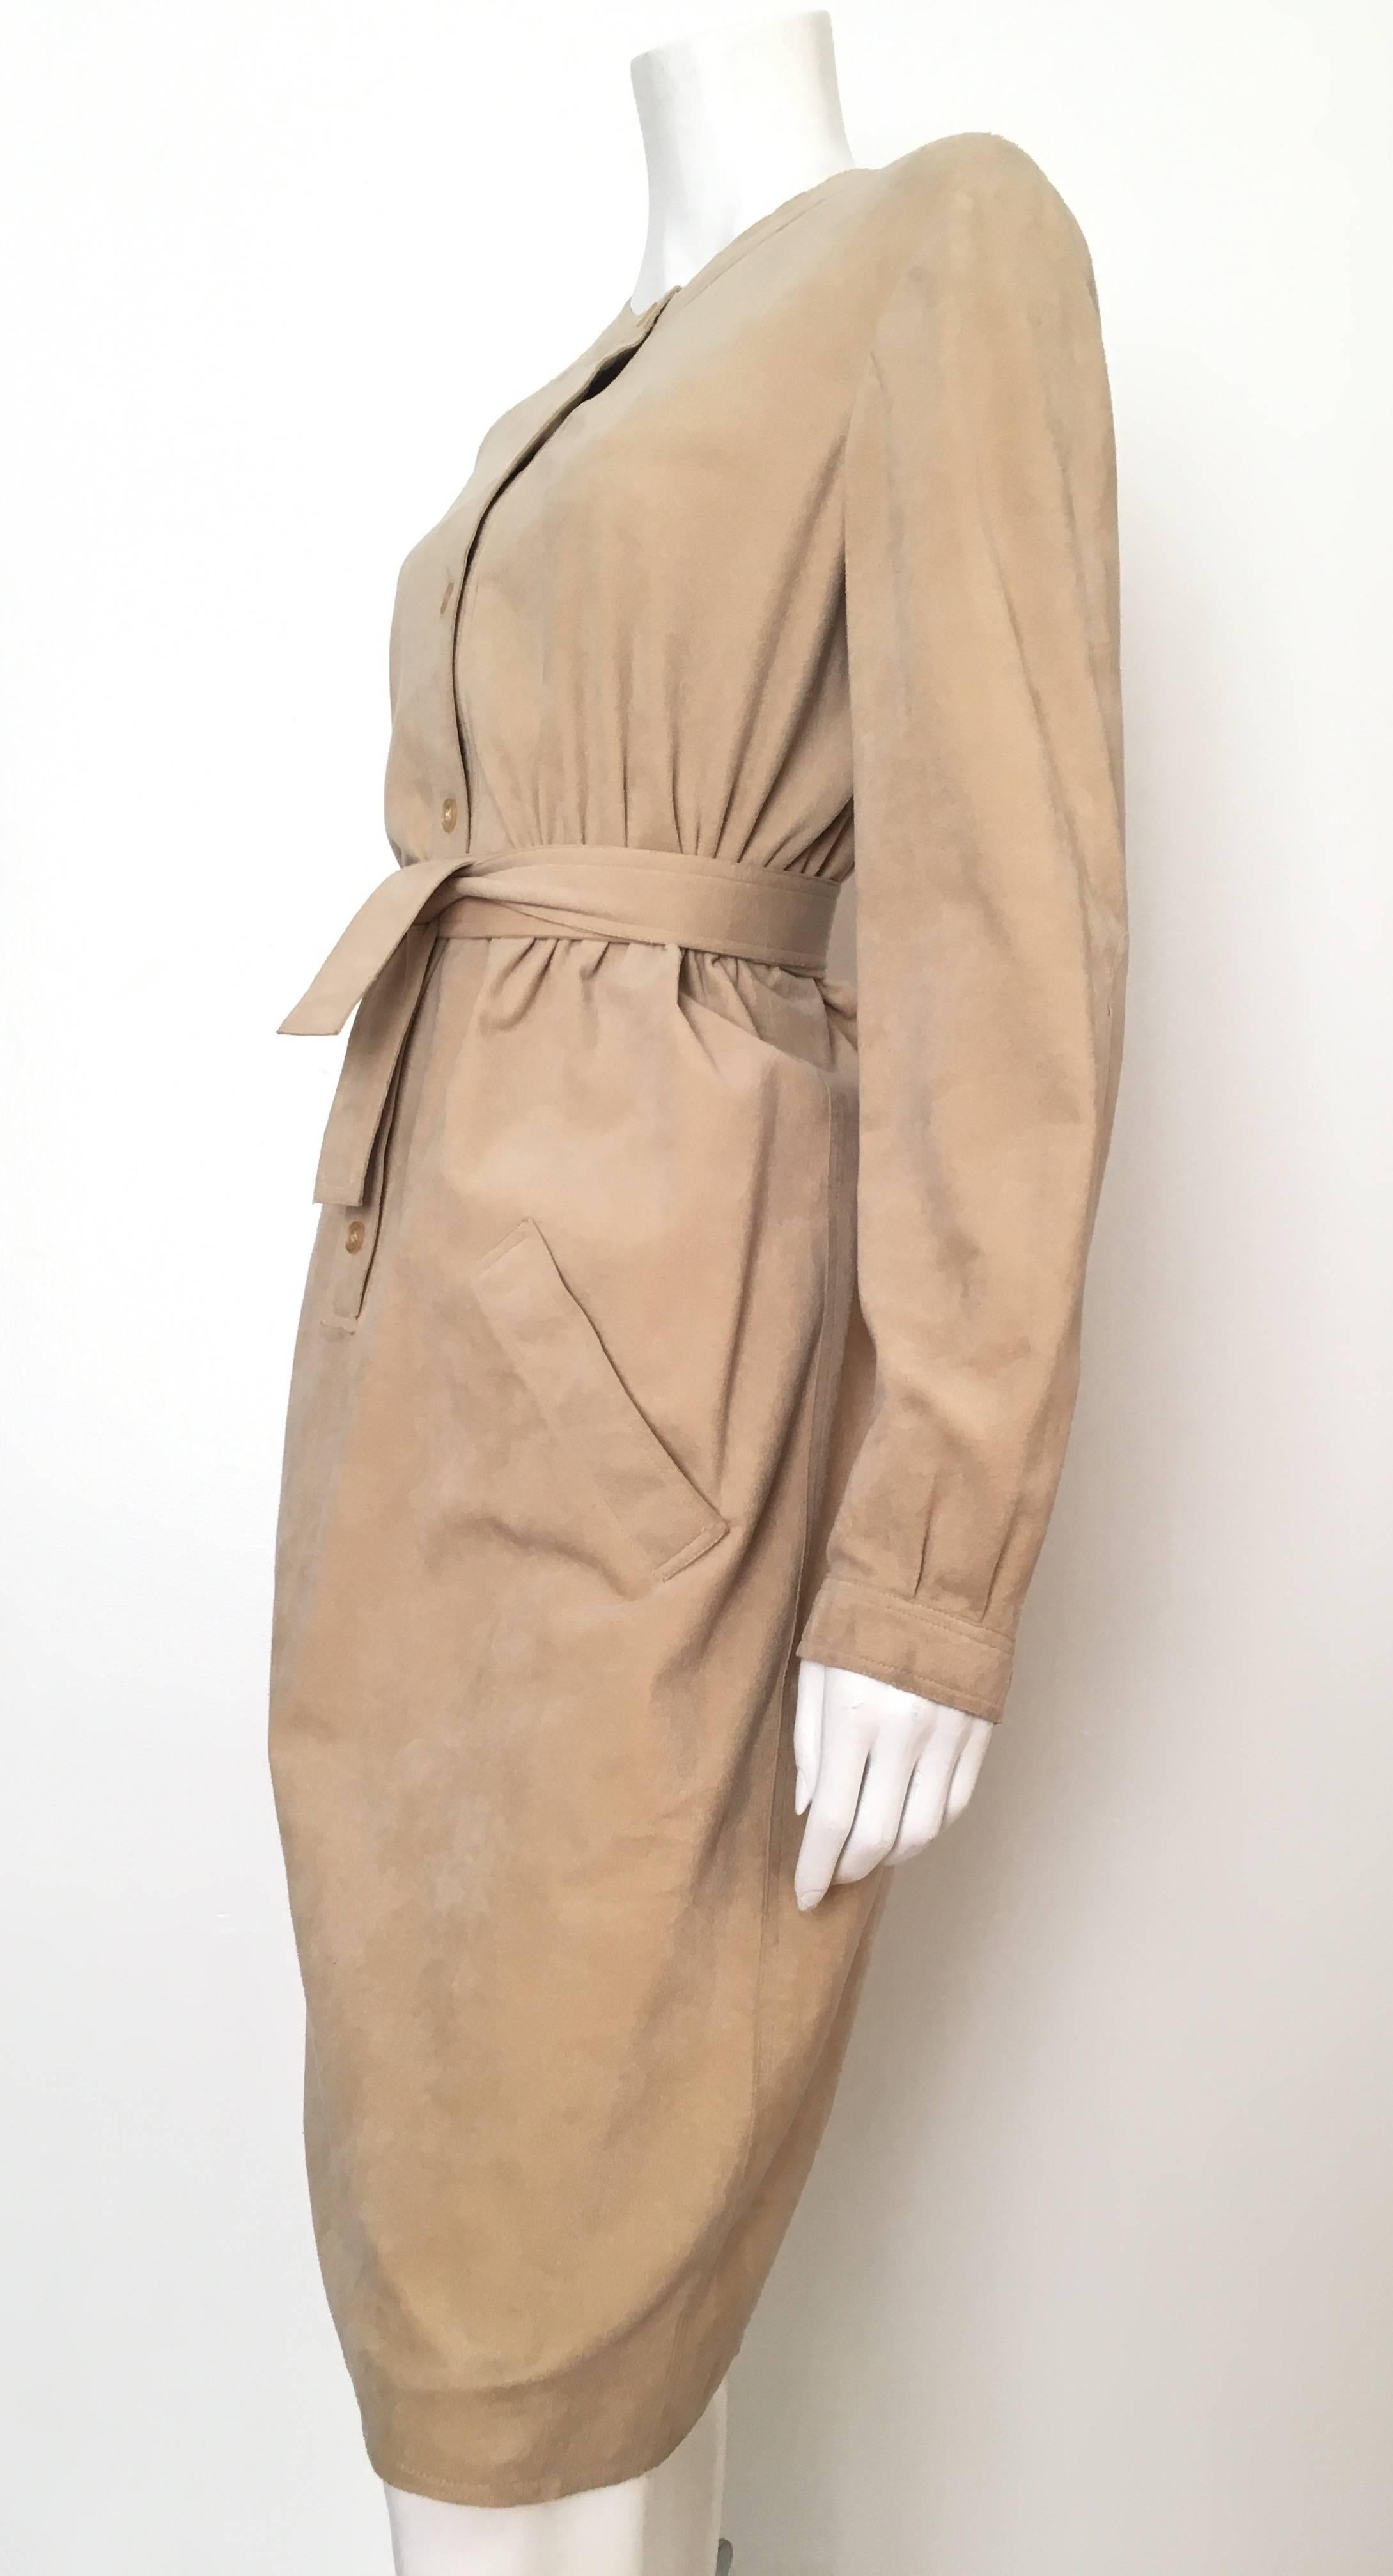 Halston Ultrasuede Belted Dress Size Large. 1